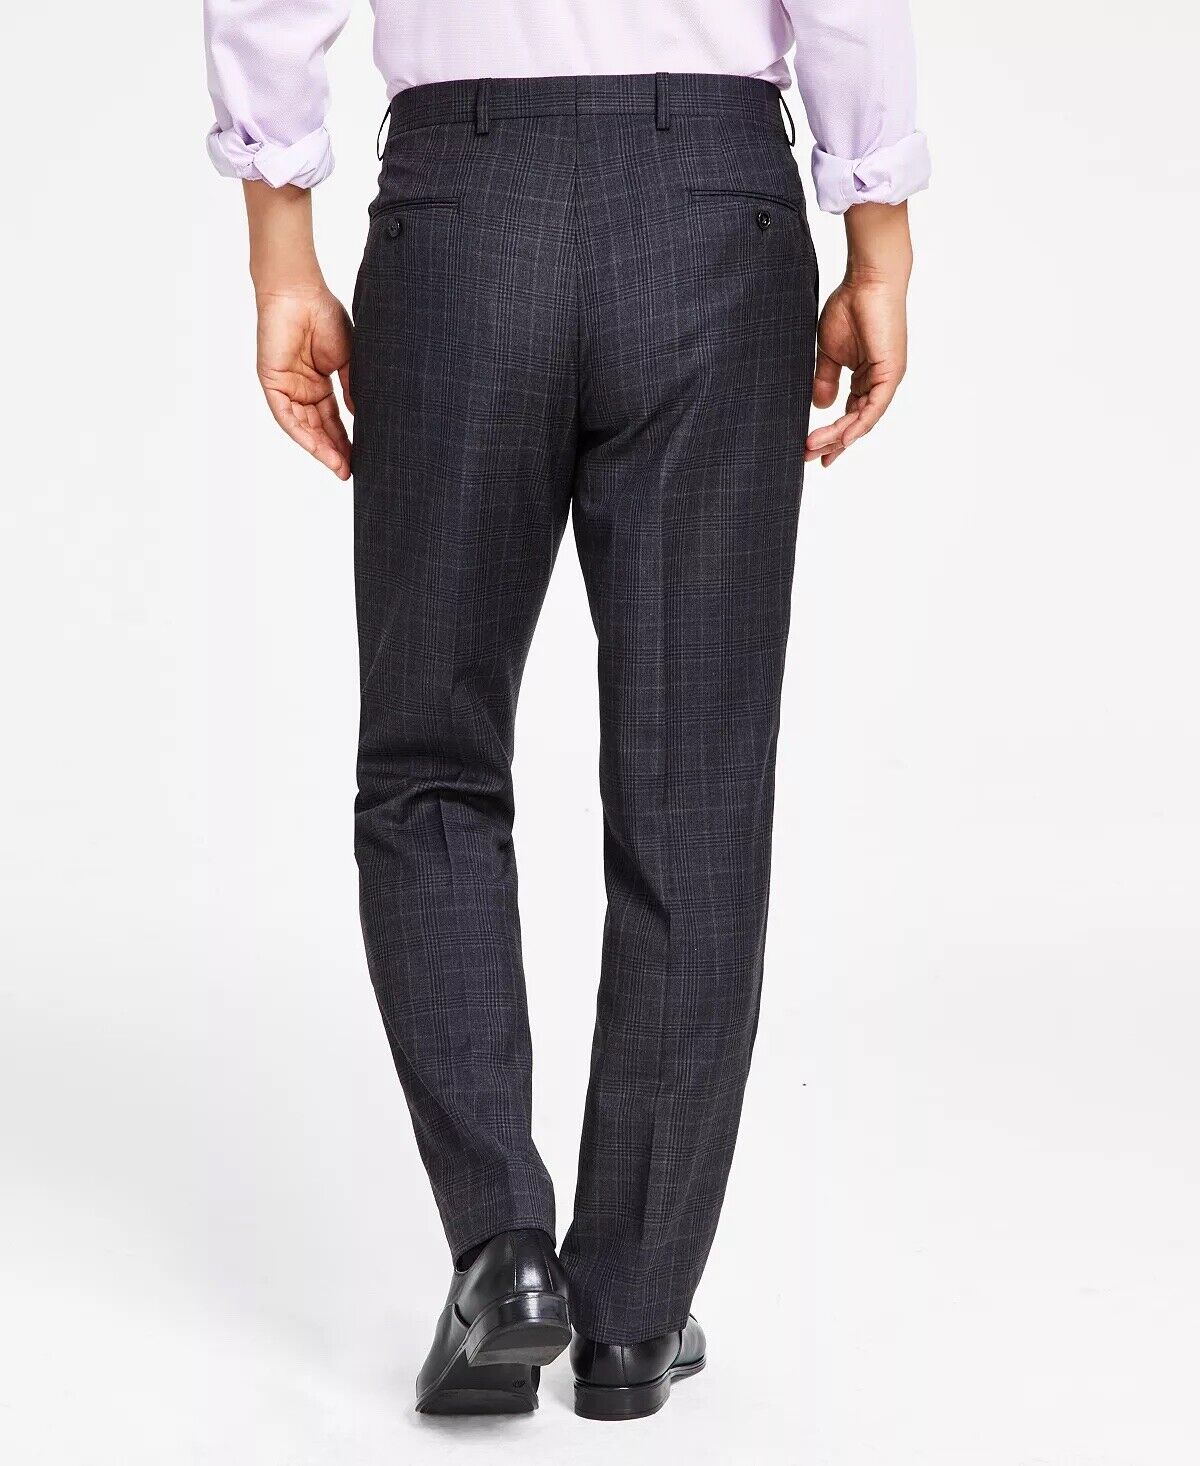 Lauren Ralph Lauren Ultraflex Classic Fit Wool Suit Pants Charcoal Plaid 42 x 30